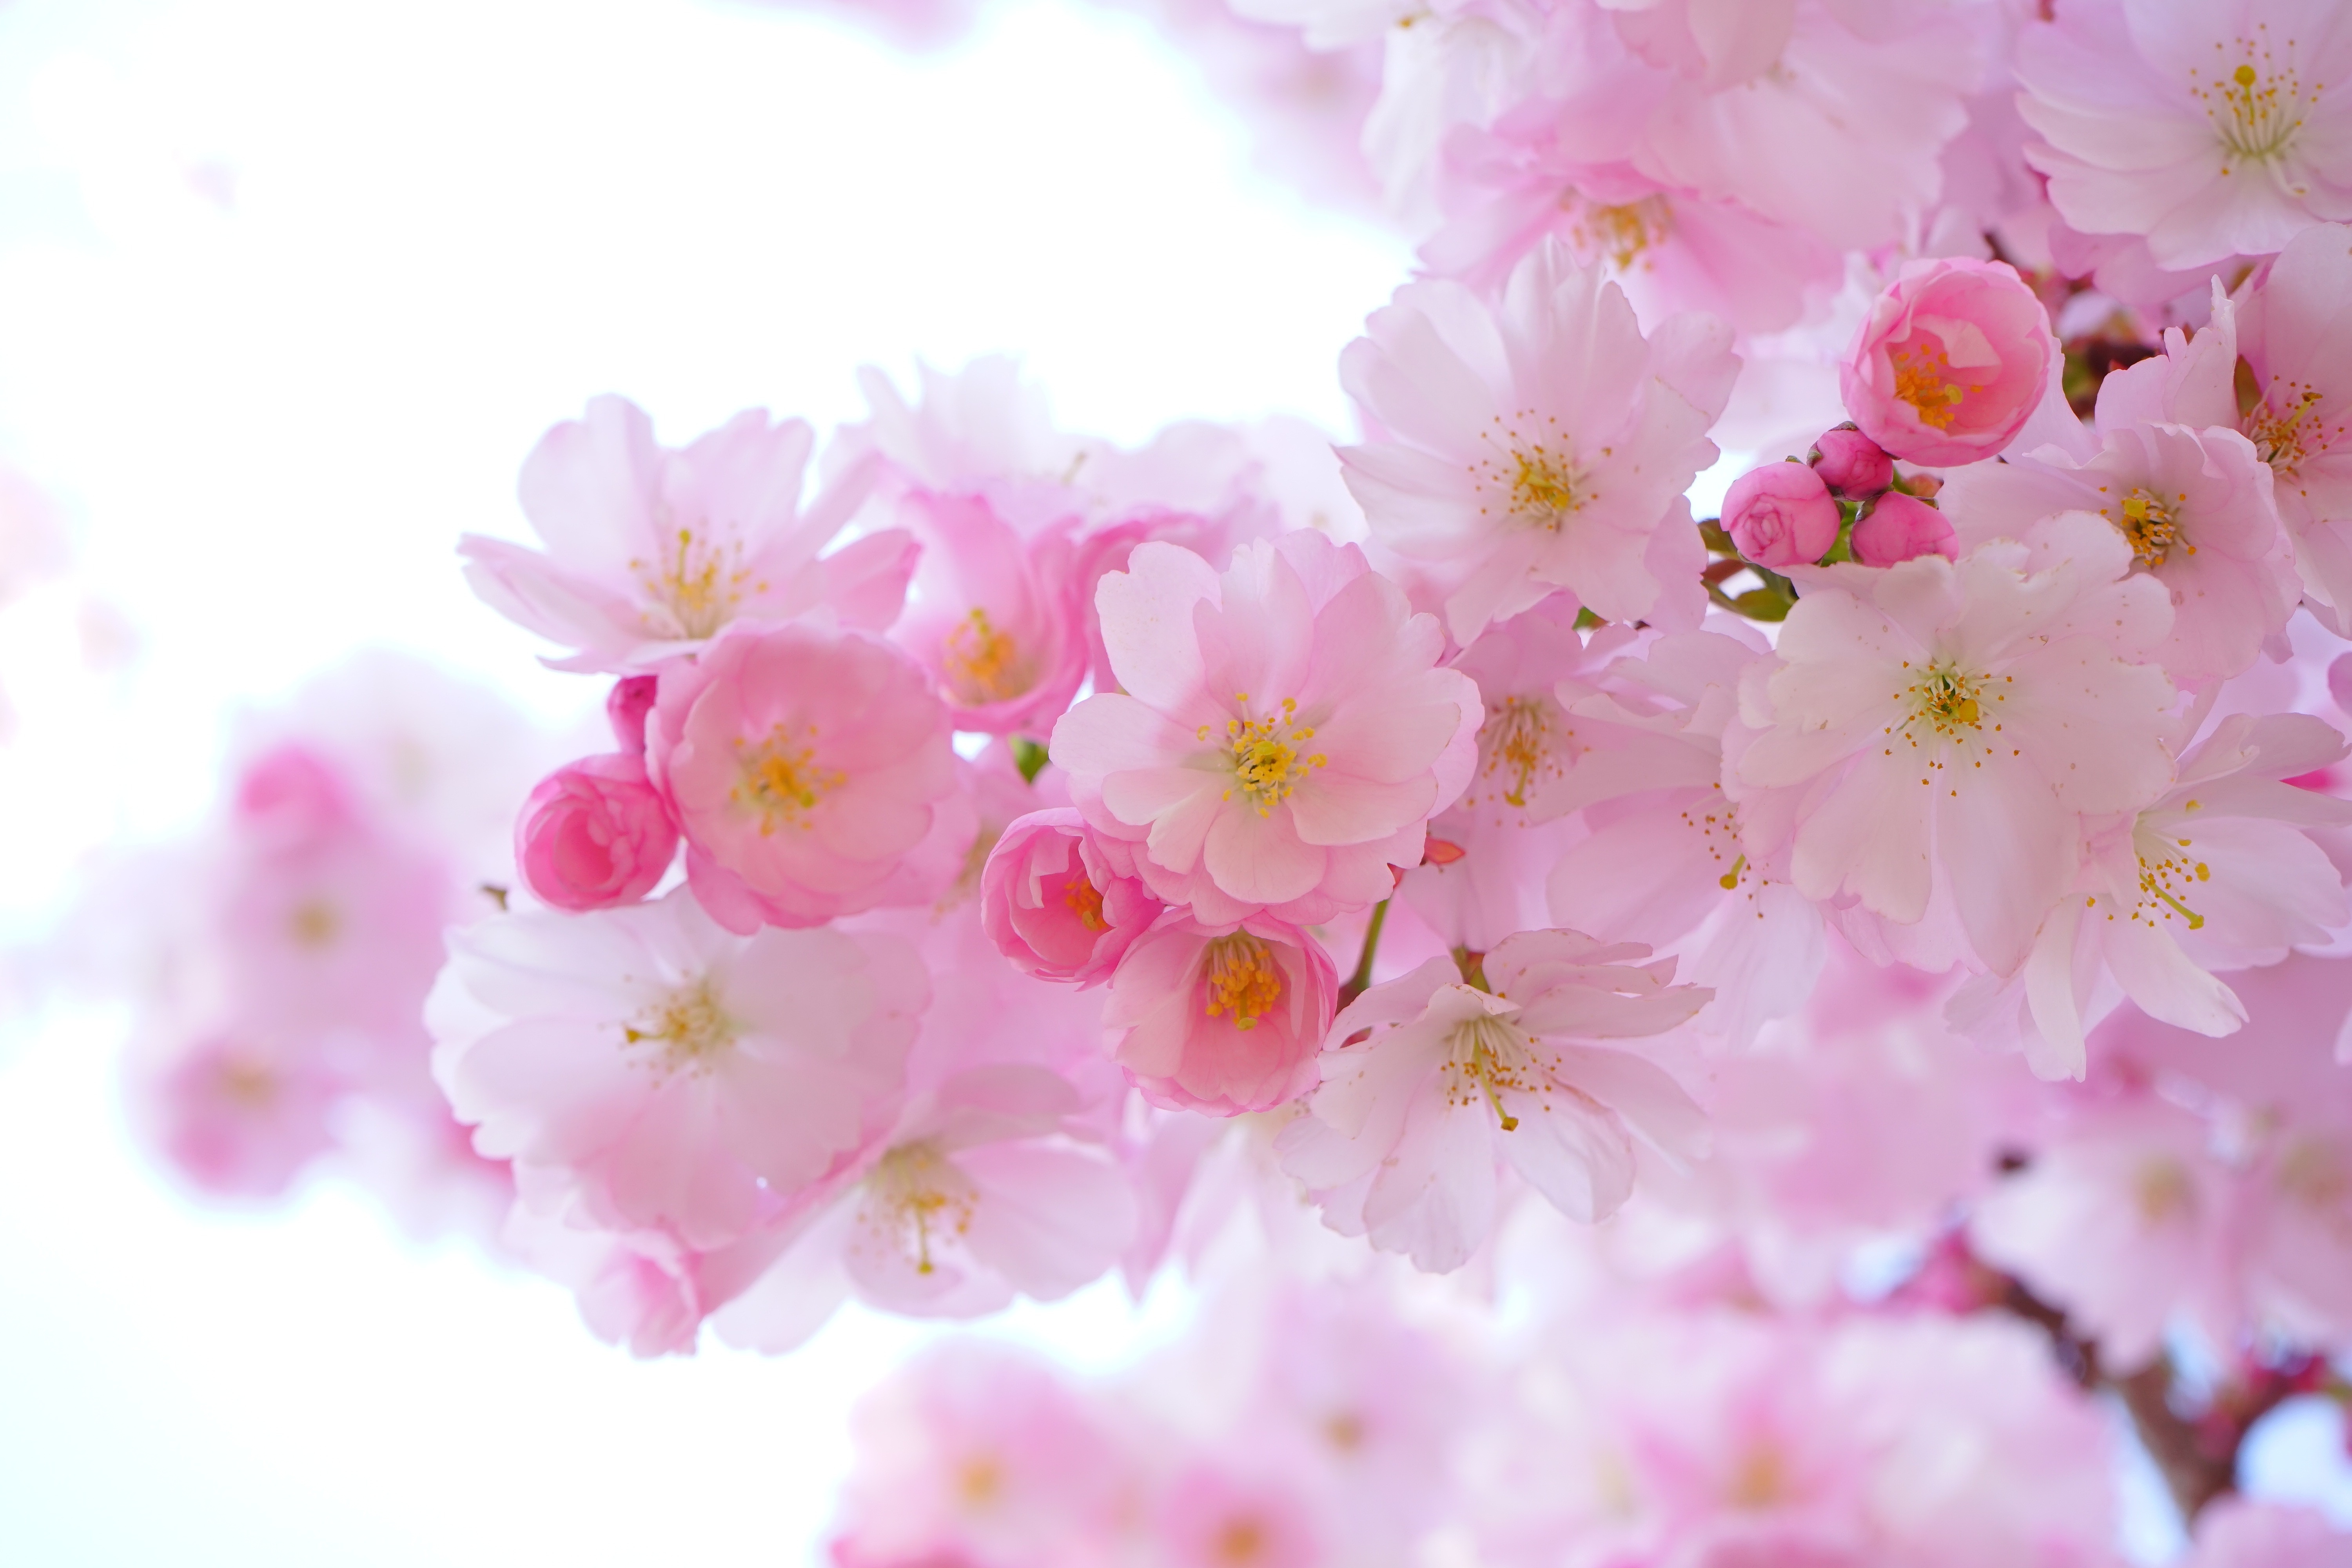 Фото дерево, ветвь, цветок, растение, лепесток, весна, продукт, цвет, красочный, розовый, вишни, цветы, бутон, японские вишневые деревья, макросъёмка - бесплатные картинки на Fonwall